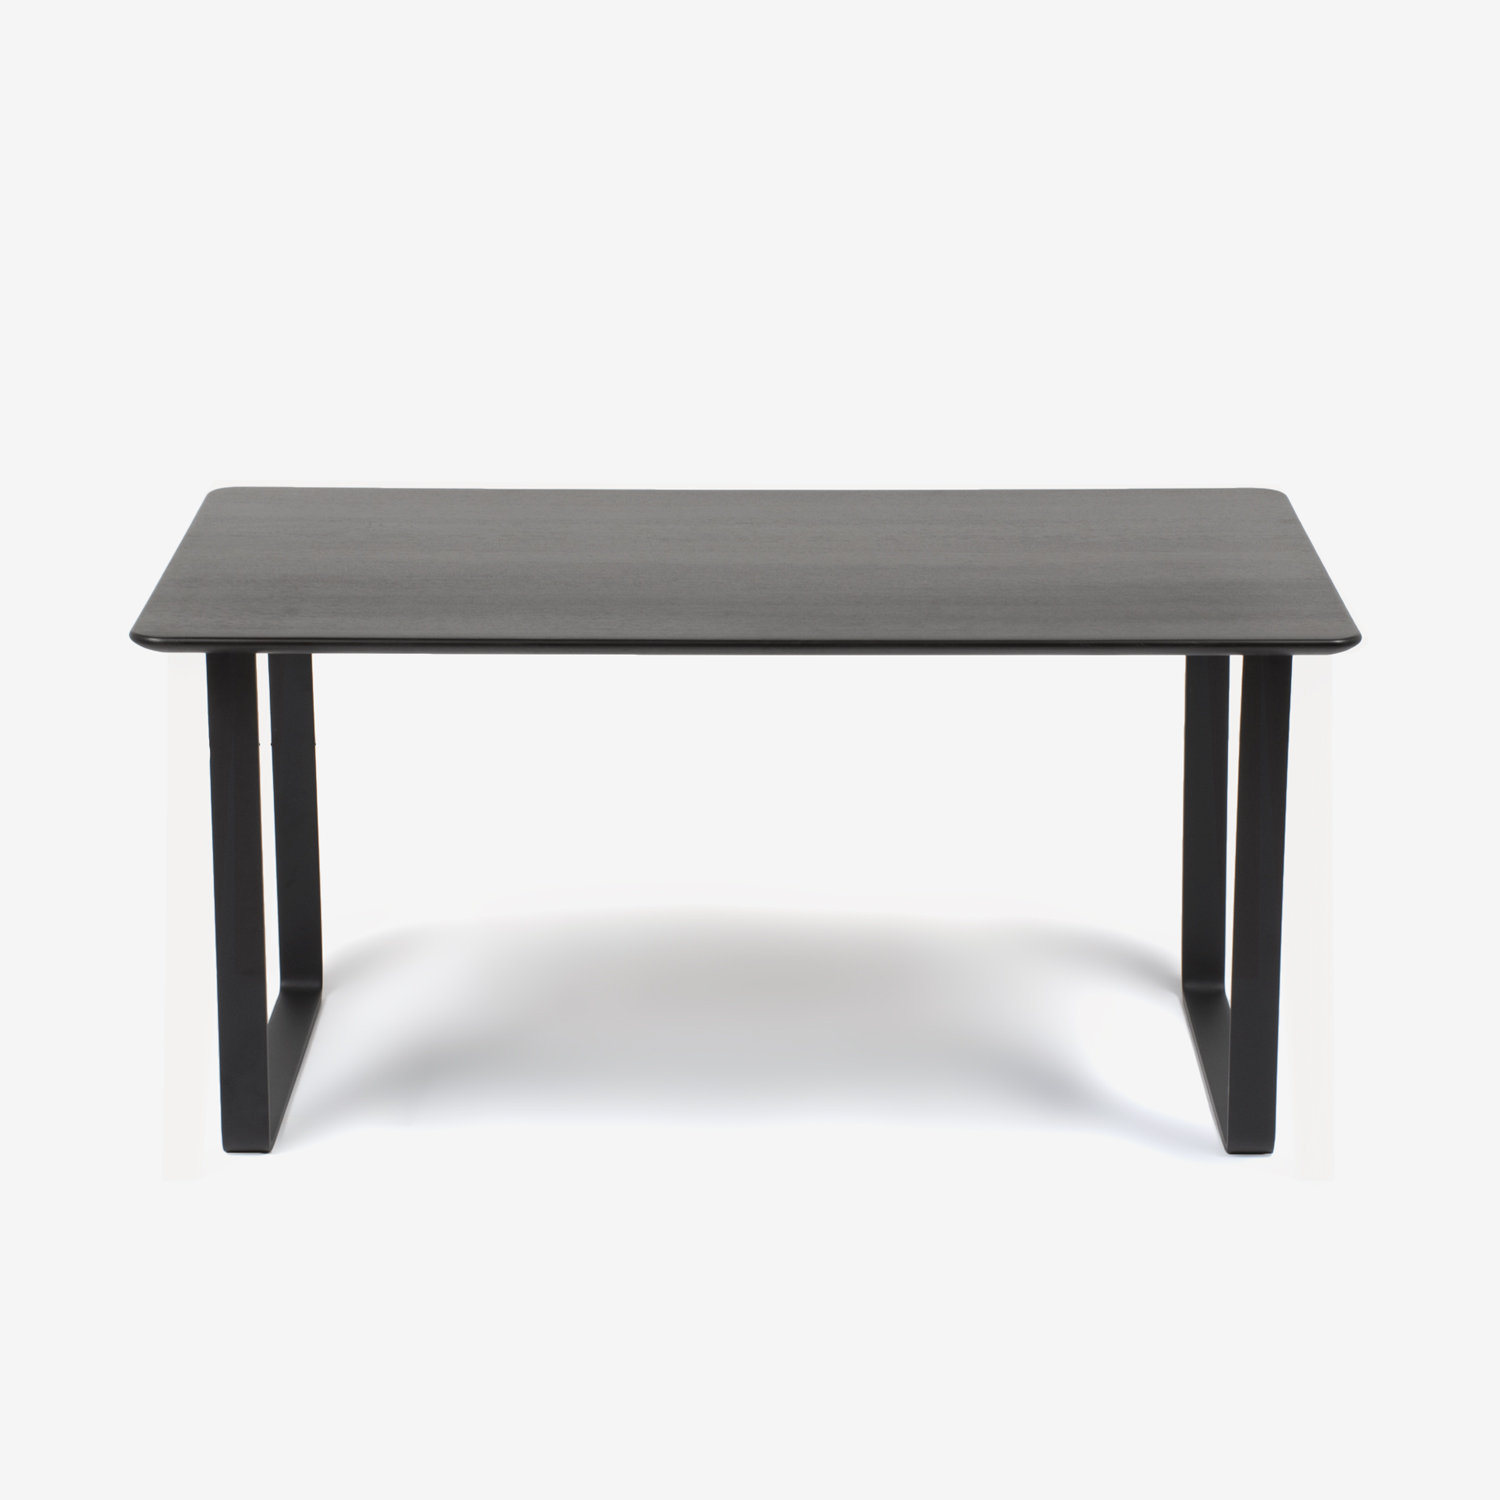 ダイニングテーブル「フィル3」天板角丸型 金属脚シルバー色 レッドオーク材 ダークブラウン色 全4サイズ